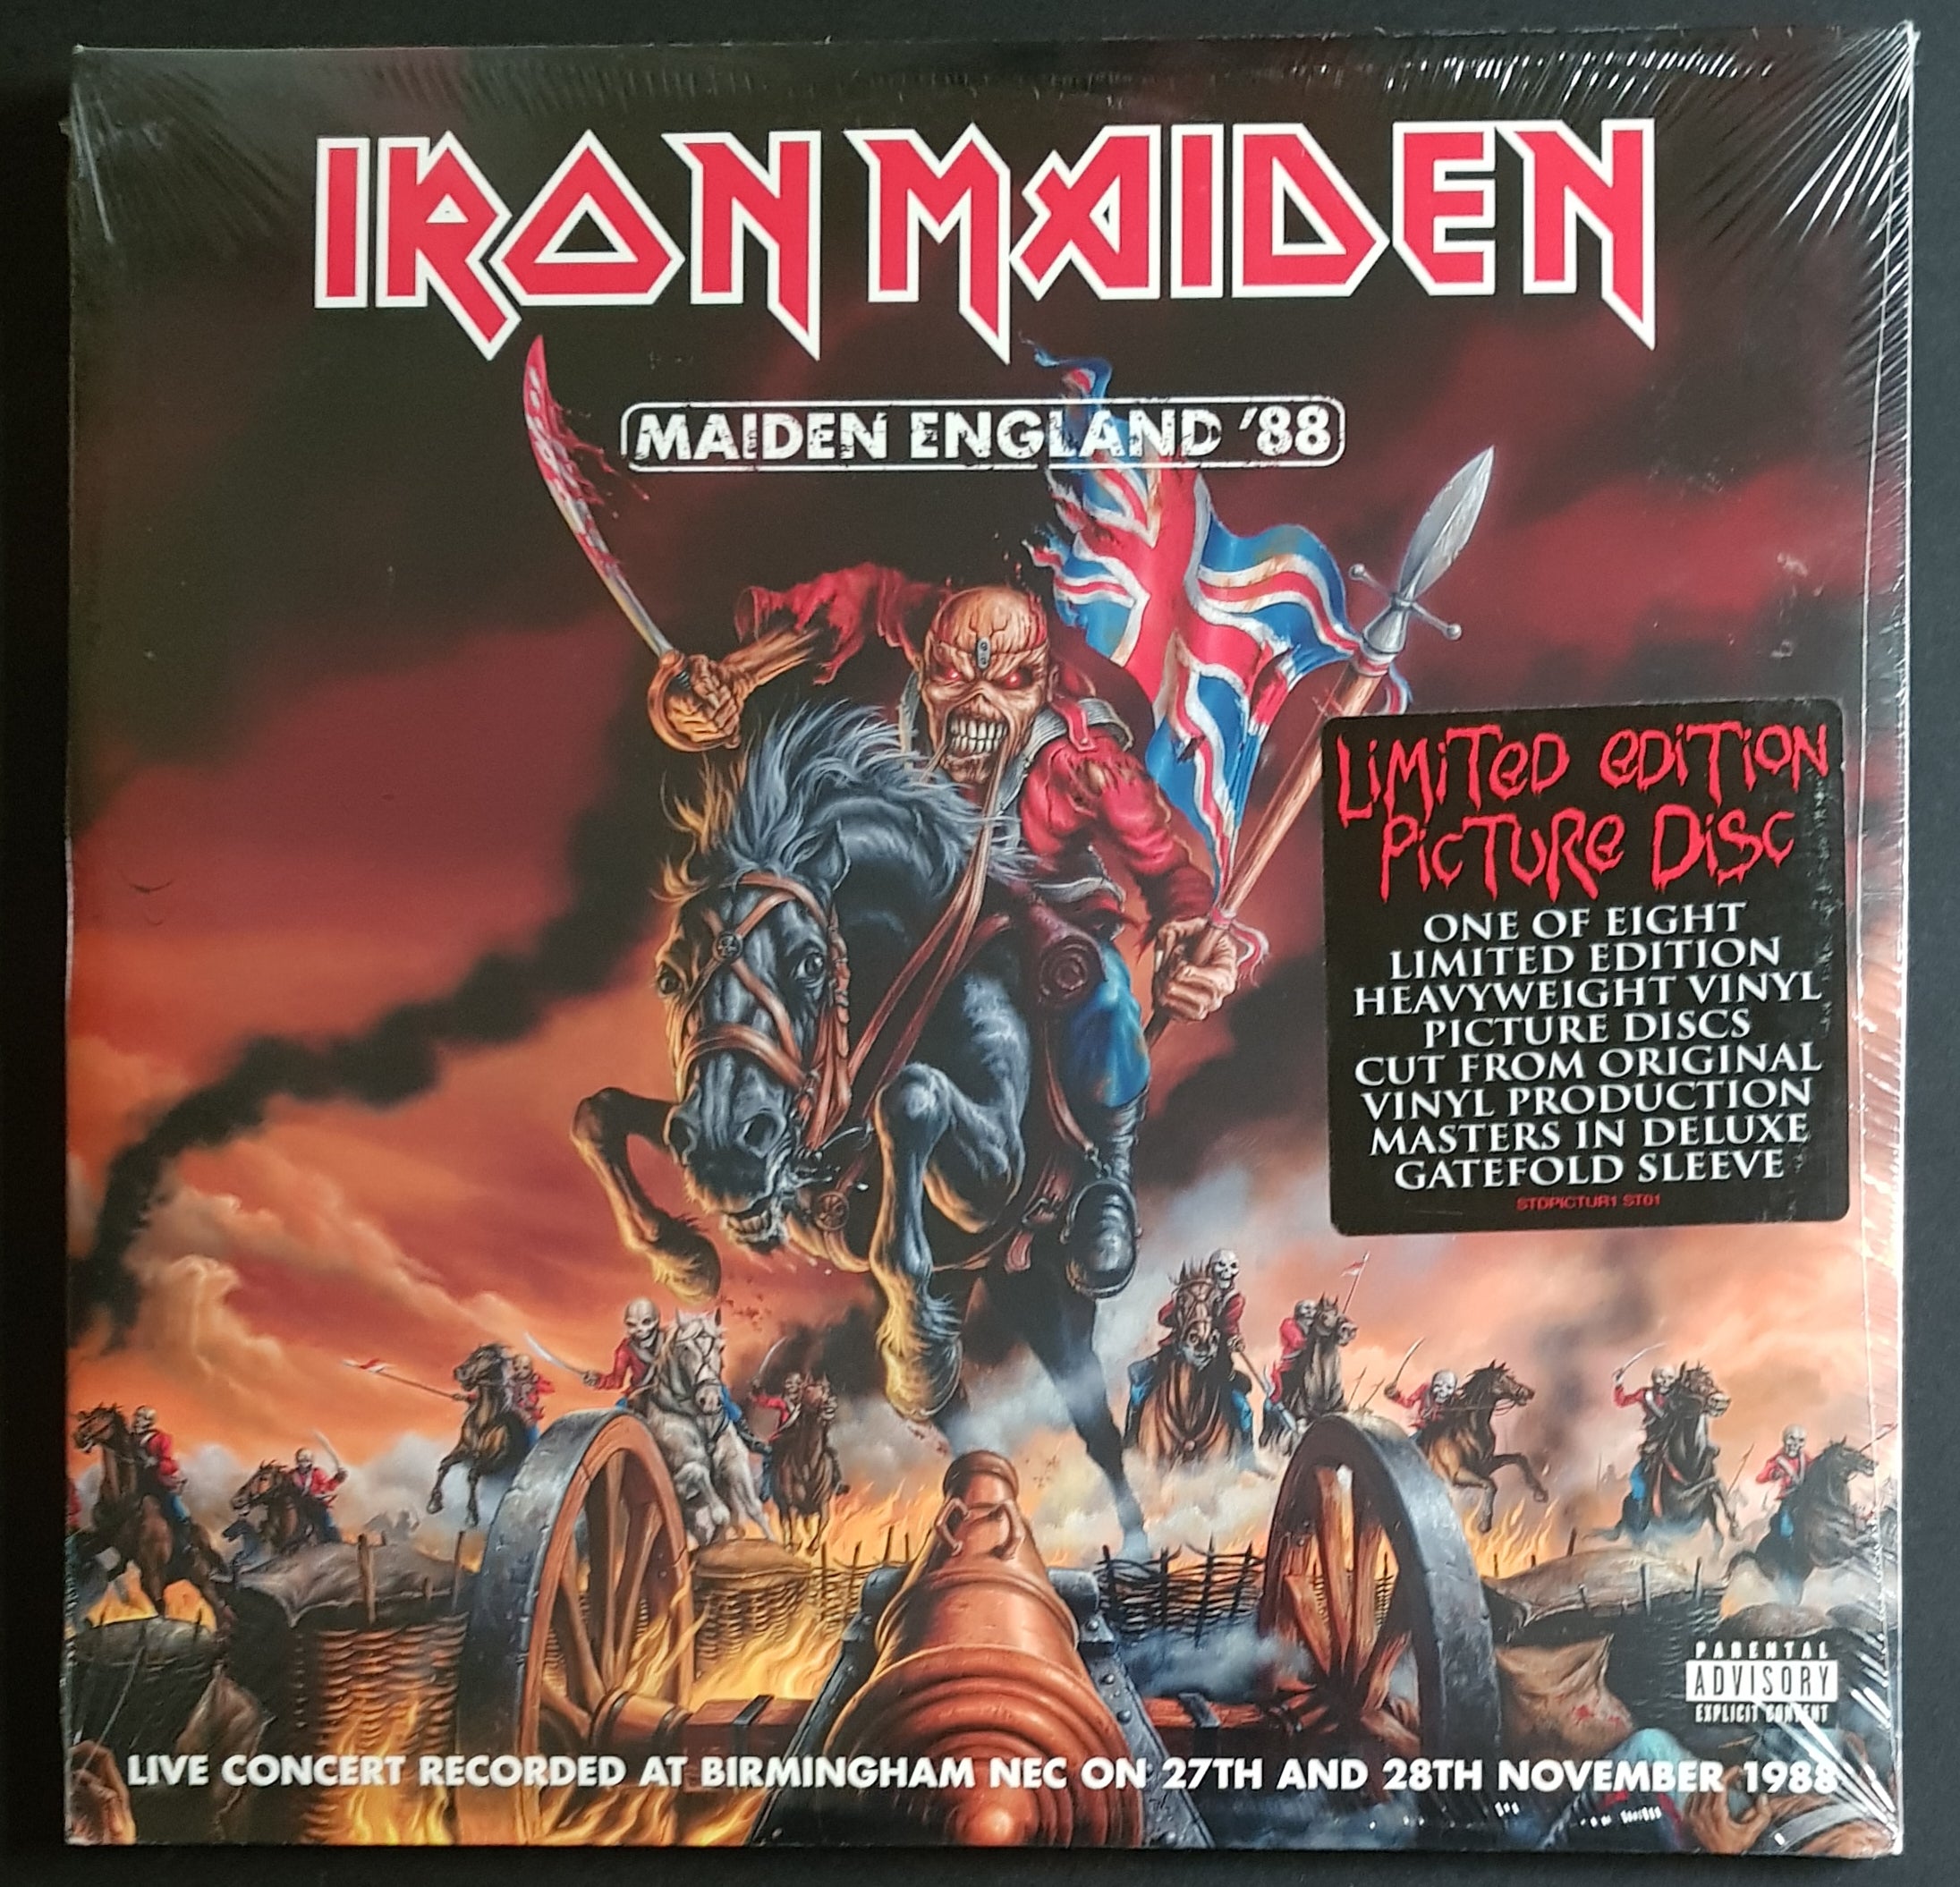 Iron Maiden - Maiden England '88 – Vicious Sloth Collectables